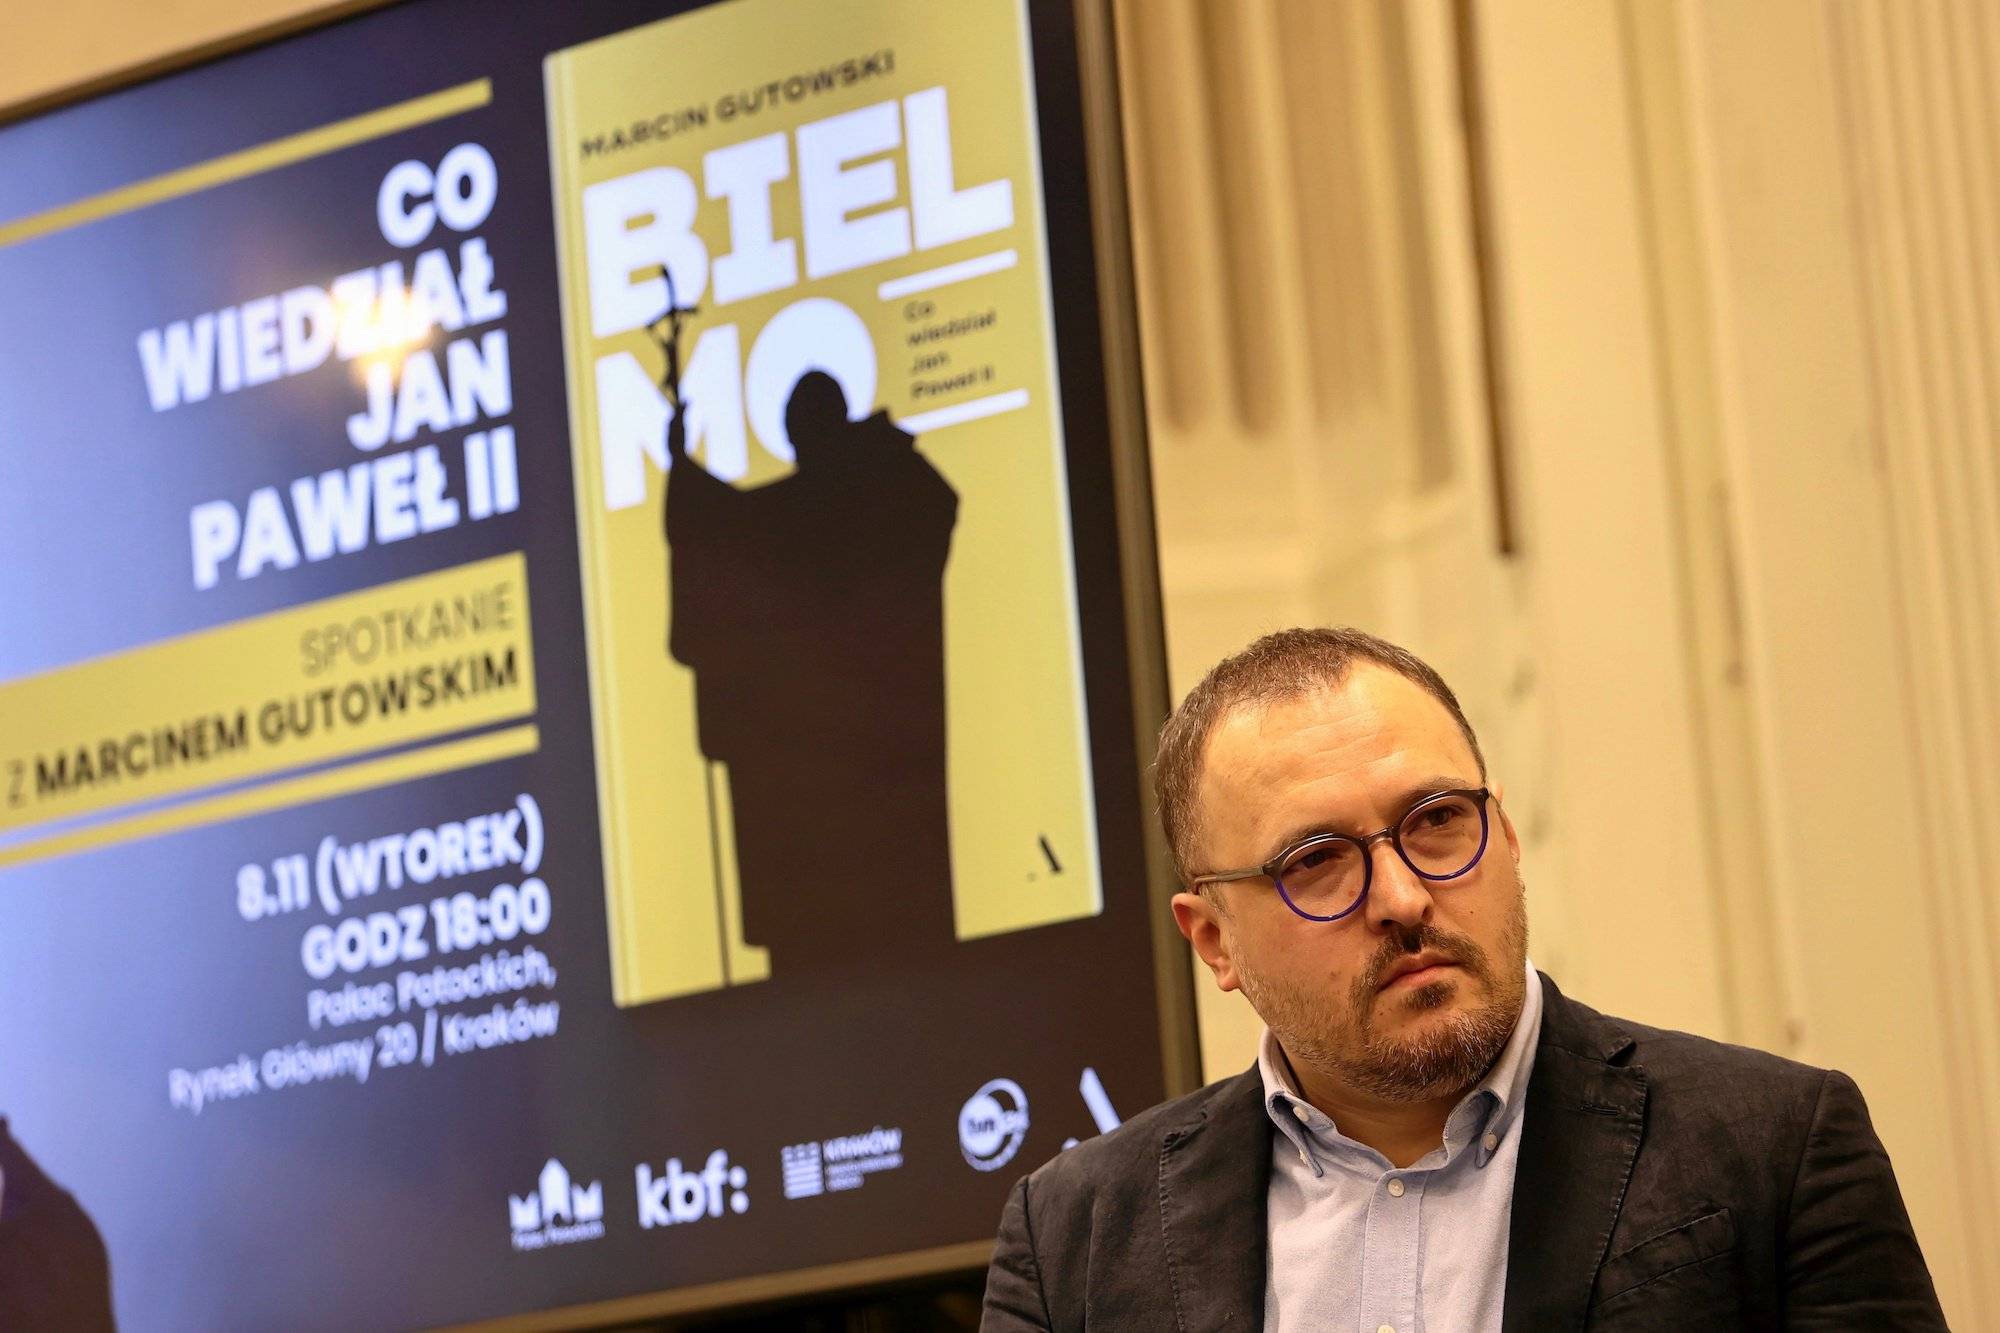 Dziennikarz Marcin Gutowski w błękitnej koszuli i ciemnej marynarce. Na twarzy ma okrągłe ciemne okulary. W tle plakat z okładką jego książki "Bielmo"